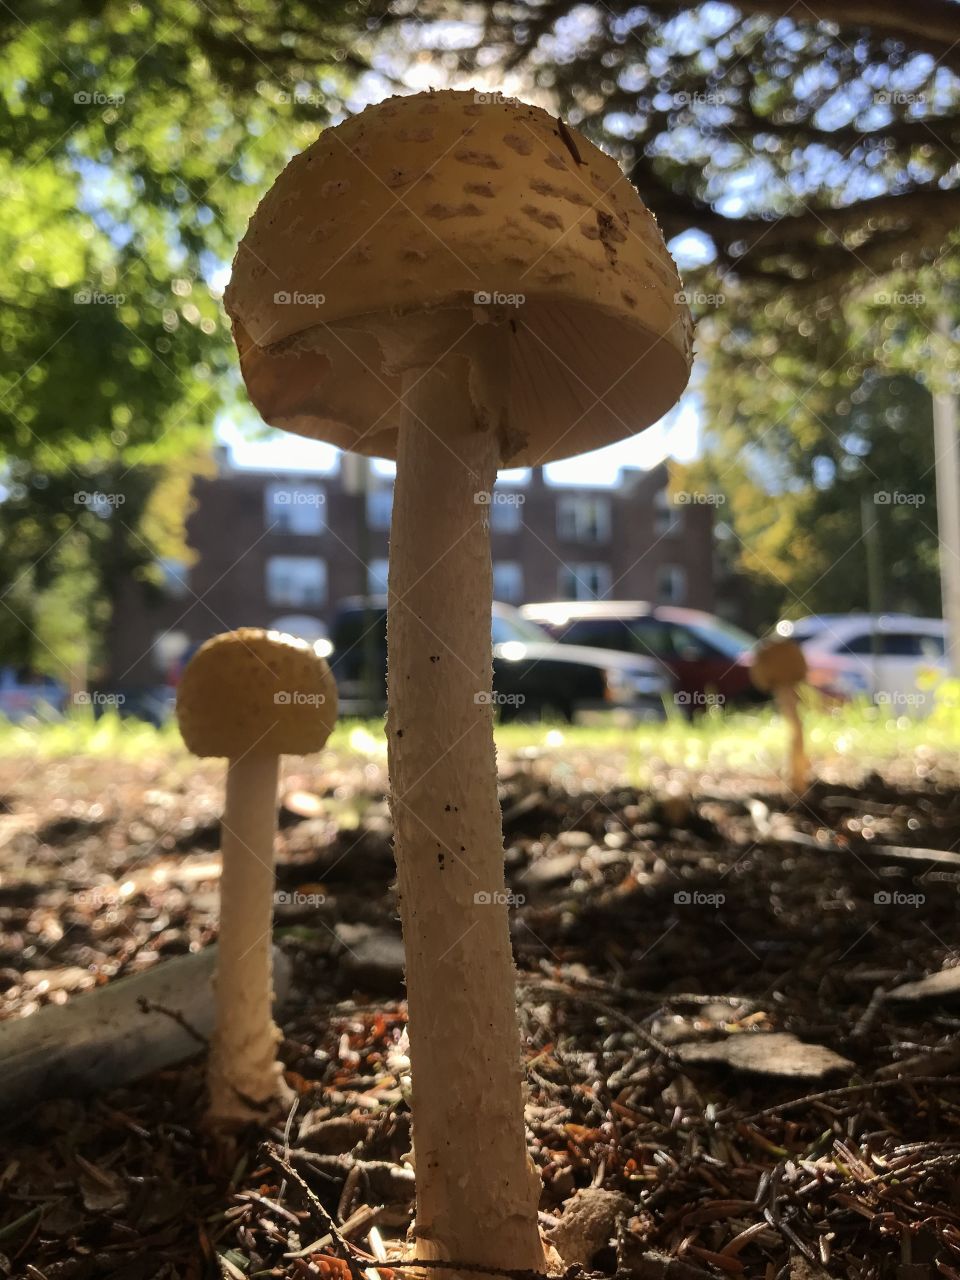 Mushrooms city